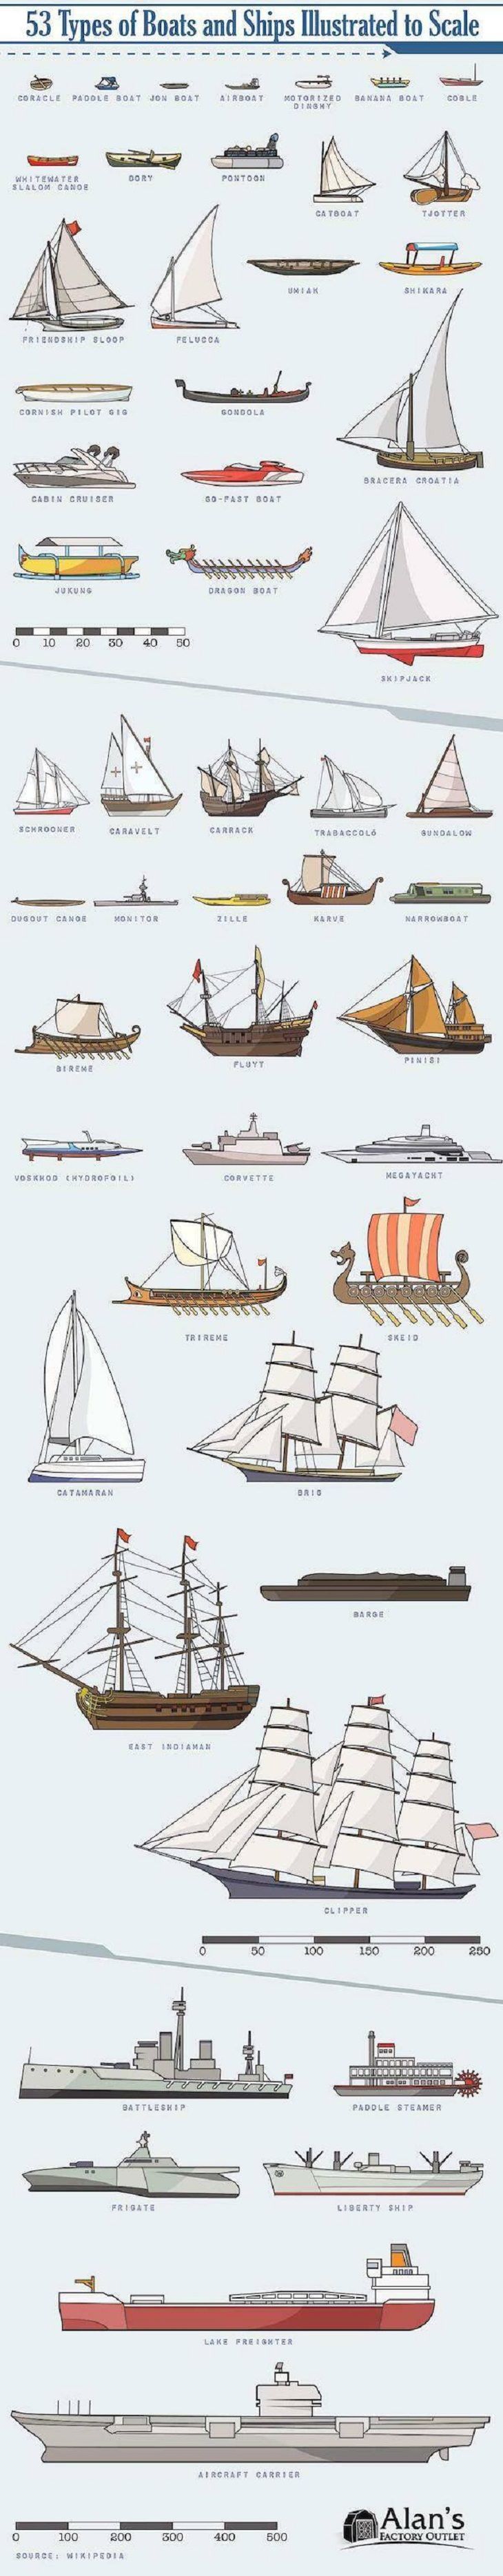 Useful charts, boats